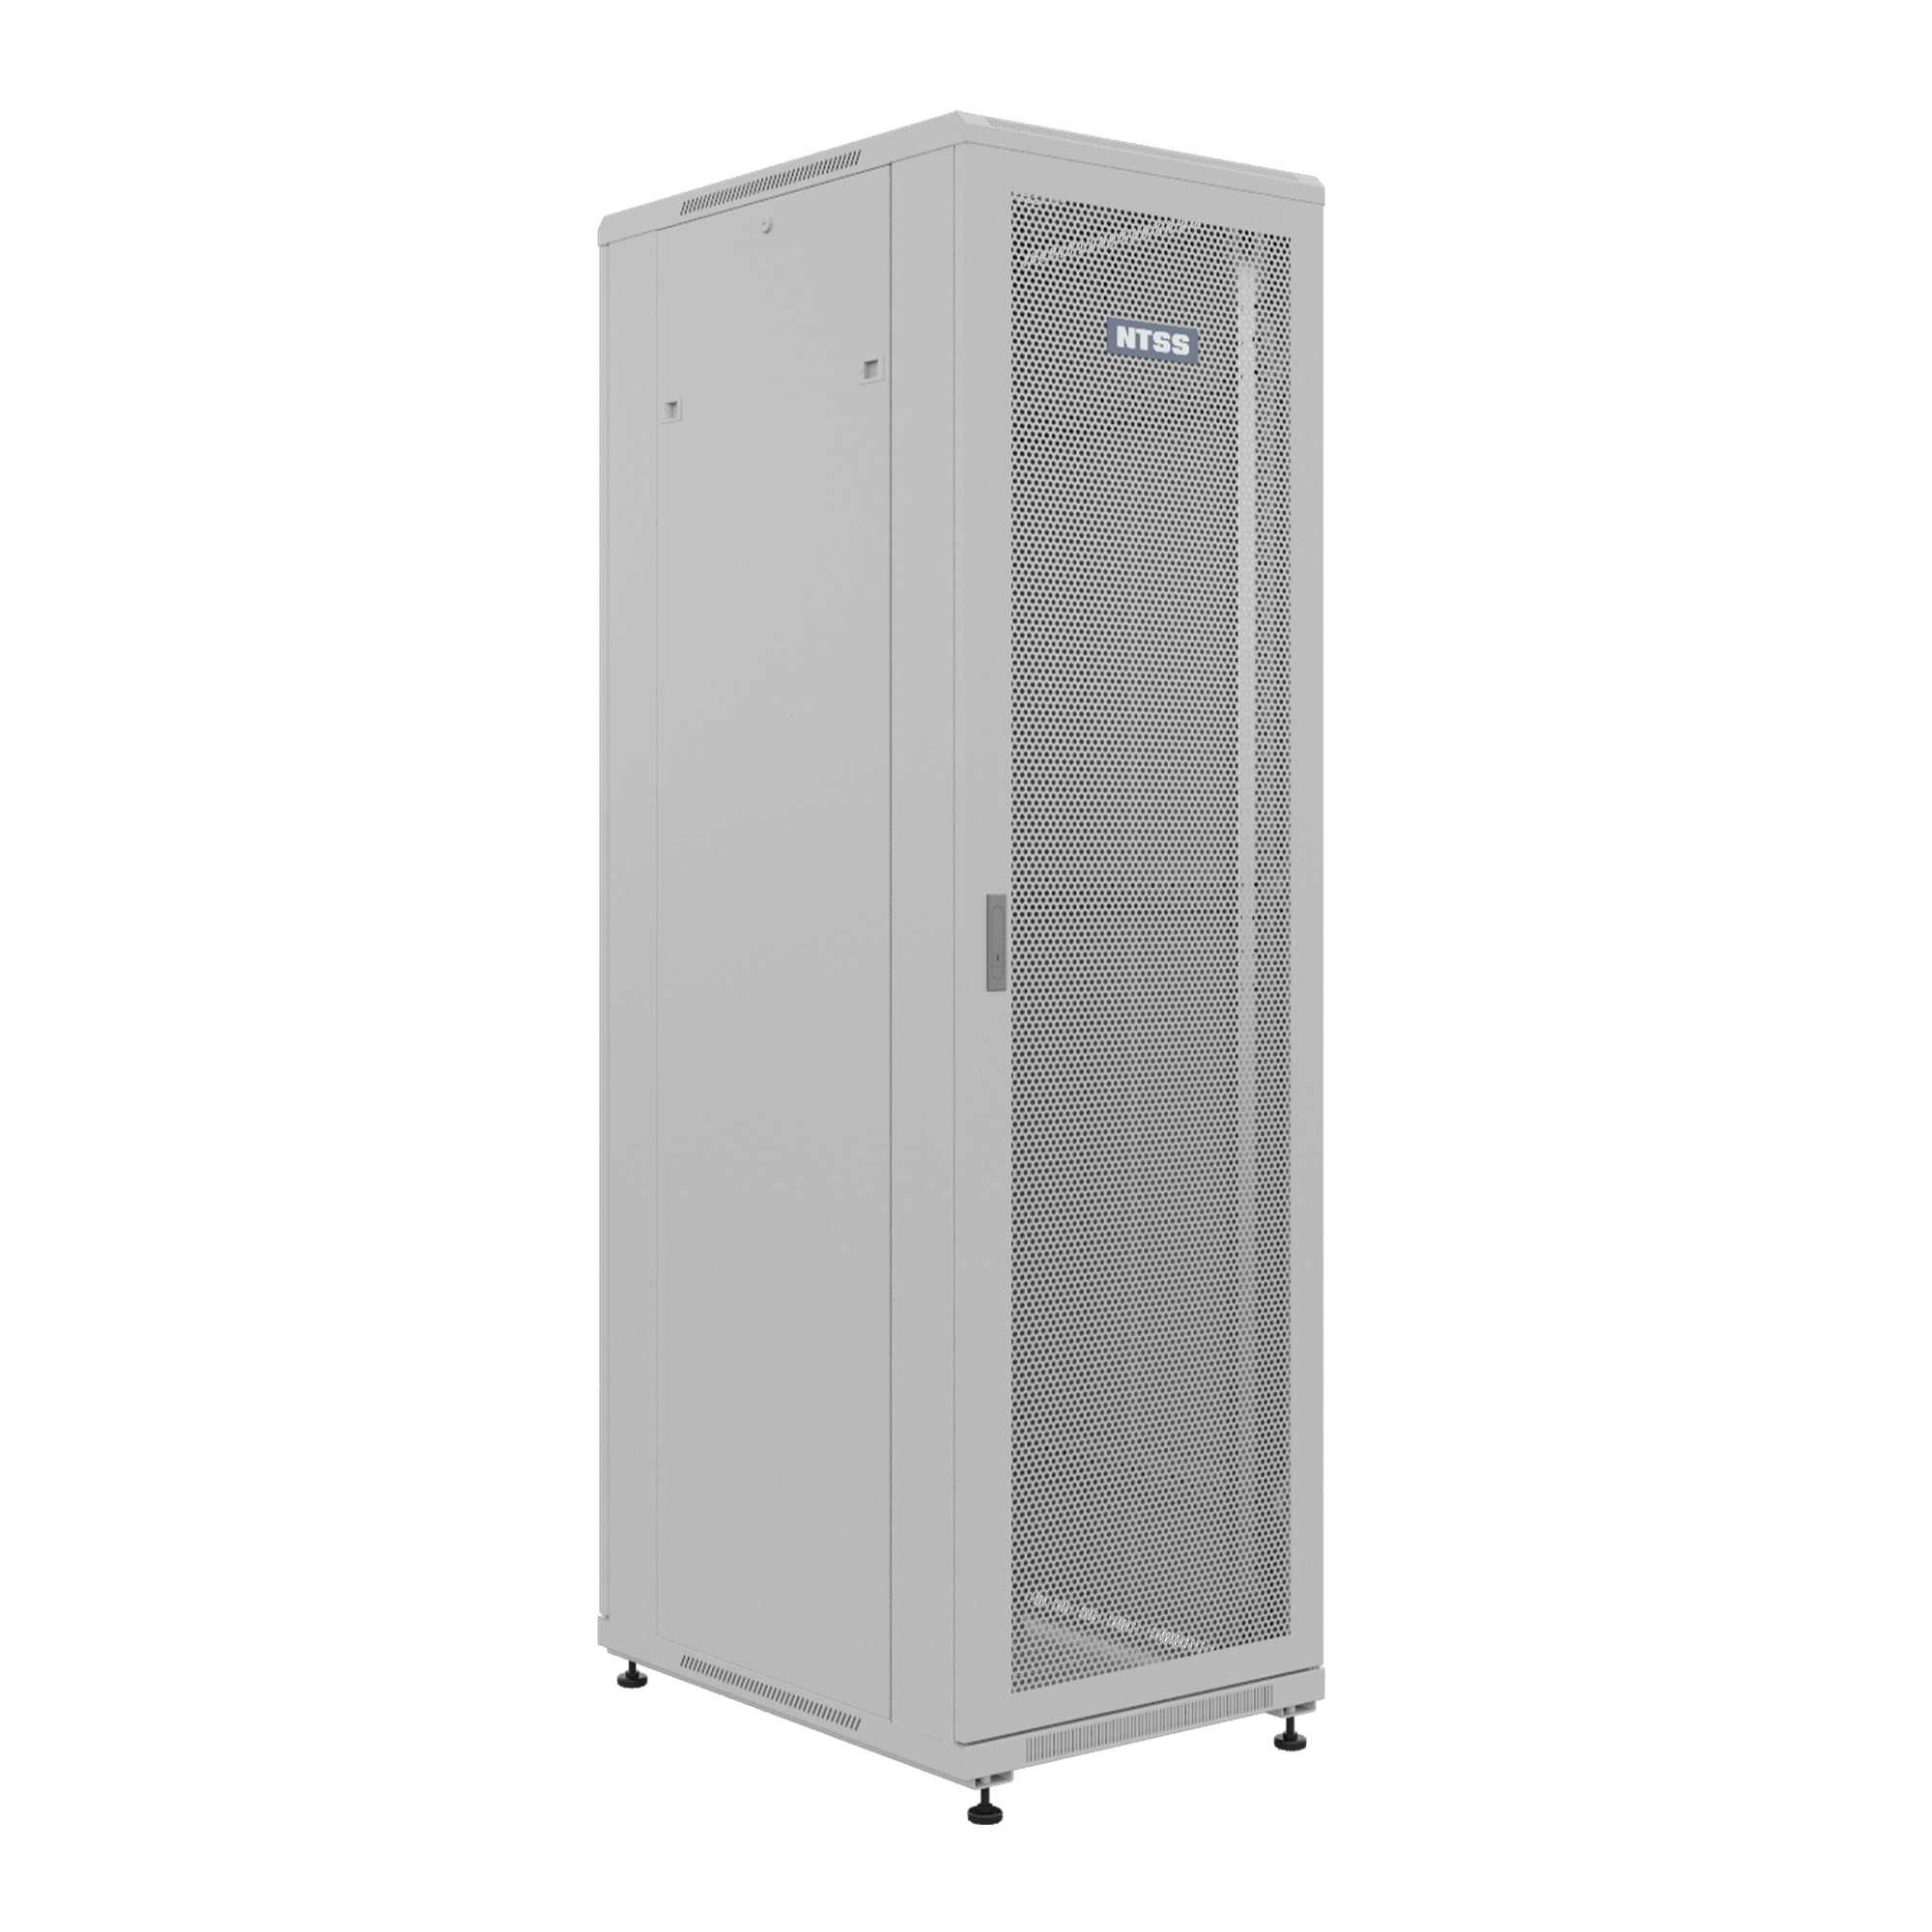 Шкаф напольный универсальный серверный NTSS R 32U 600х800мм, 4 профиля 19, двери перфорированная и сплошная металл, боковые стенки съемные, регулируемые опоры, разобранный, серый RAL 7035